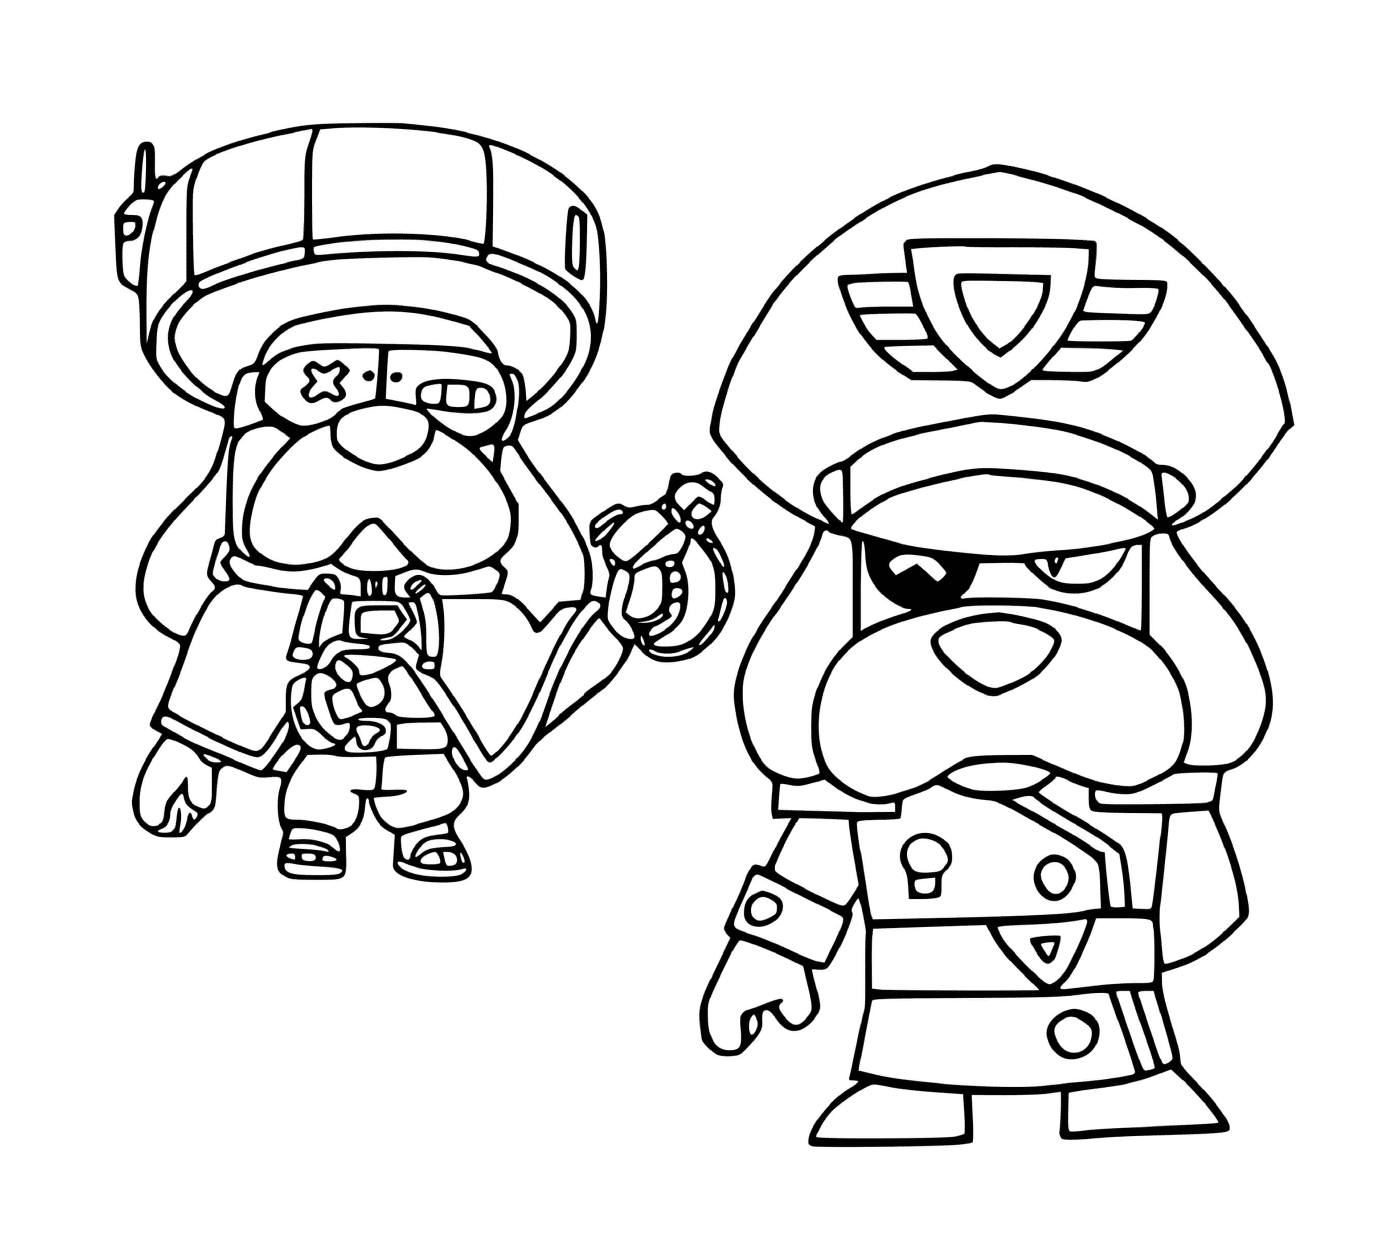   Deux personnages animés prêts à combattre ! 